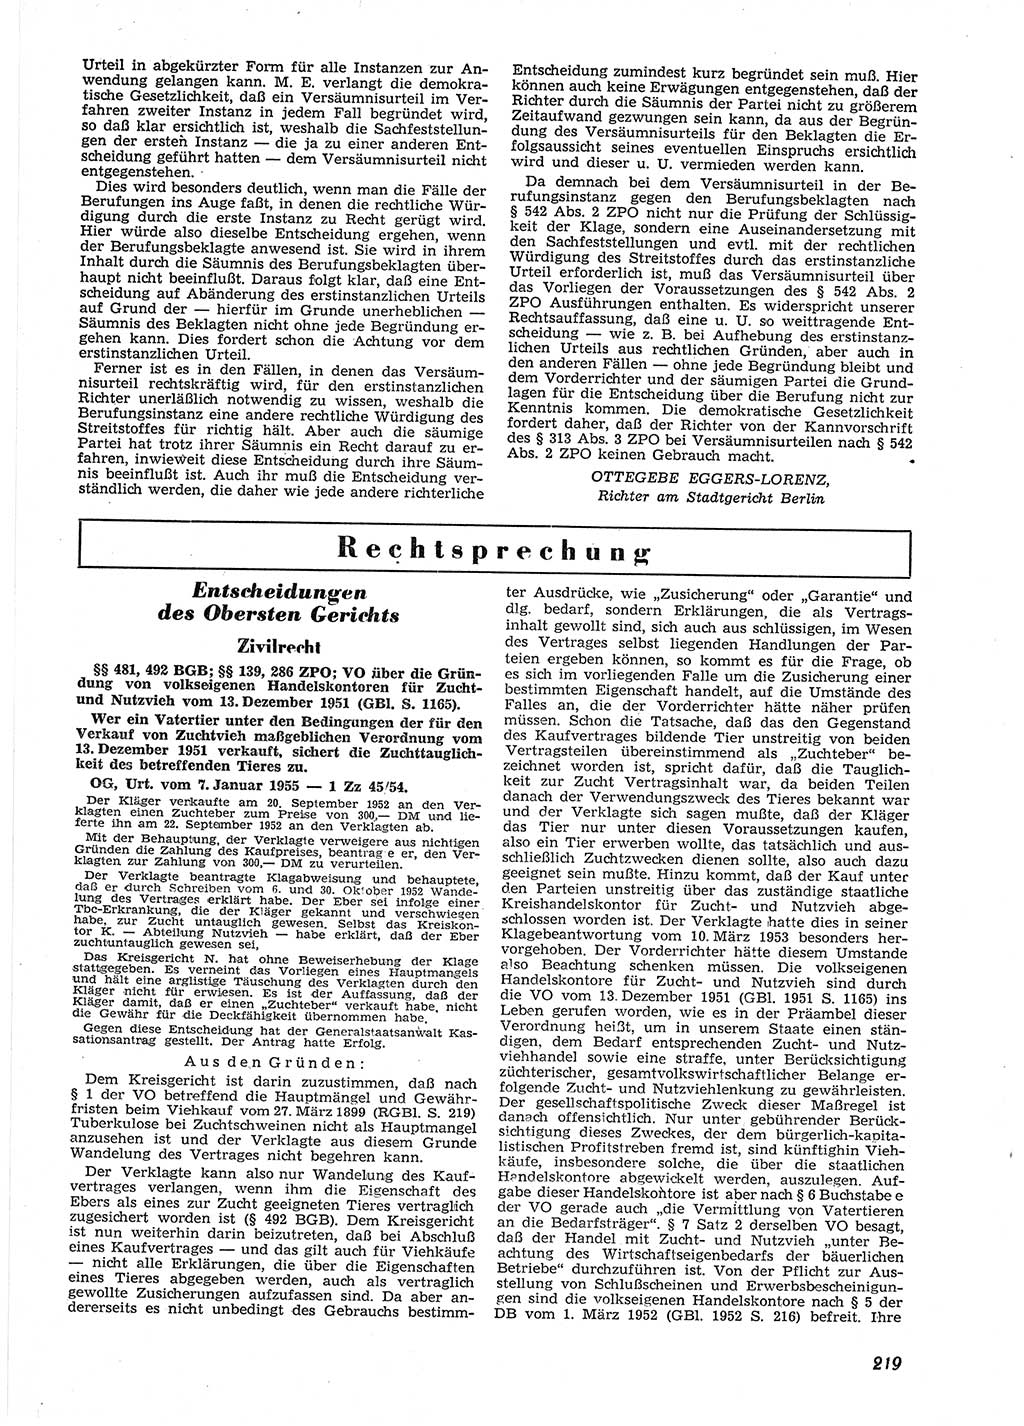 Neue Justiz (NJ), Zeitschrift für Recht und Rechtswissenschaft [Deutsche Demokratische Republik (DDR)], 9. Jahrgang 1955, Seite 219 (NJ DDR 1955, S. 219)